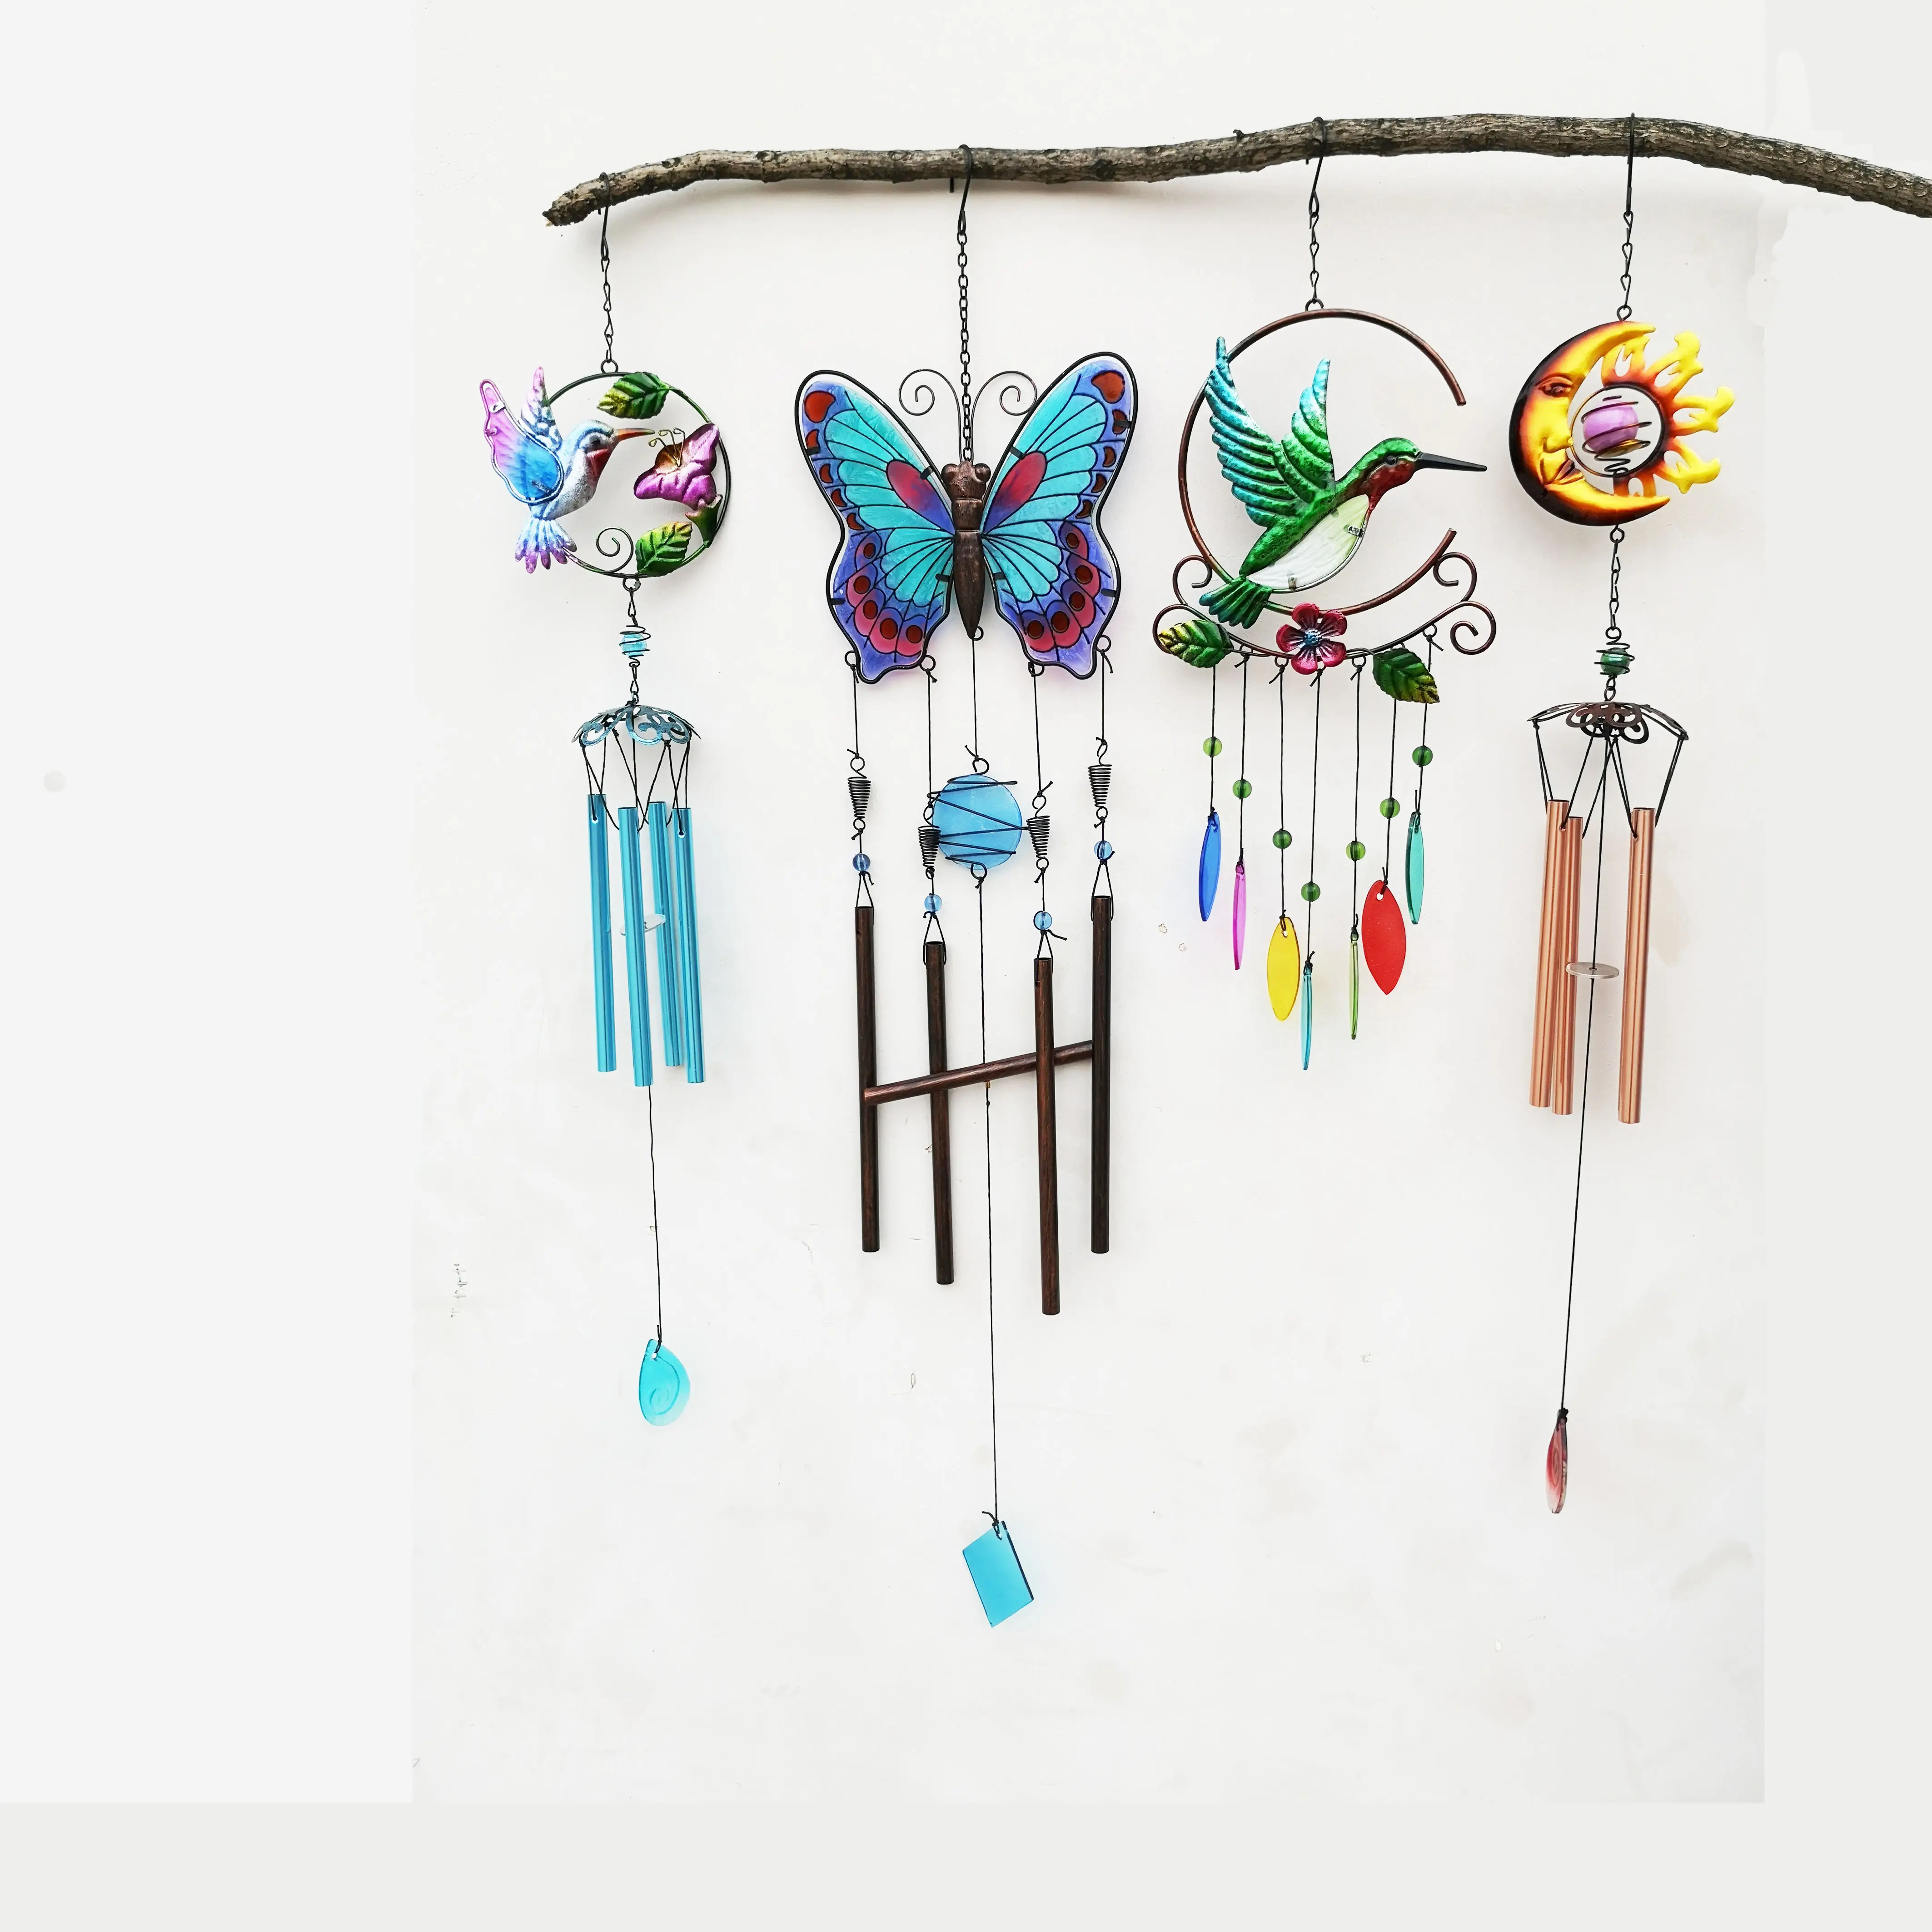 Nieuwe Kleurrijke Metalen Hummingbird En Vlinder Wind Chime Voor Outdoor/Indoor Home Garden Yard Decoratie